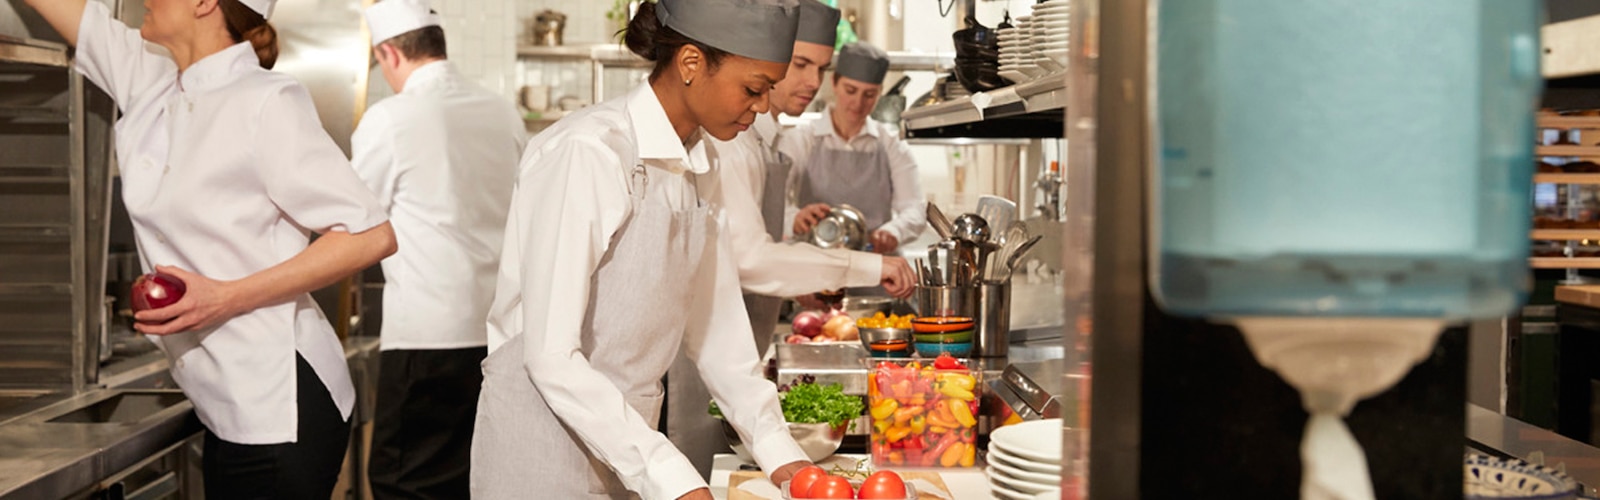 Žene i muškarci u restoranskoj kuhinji pripremaju obroke